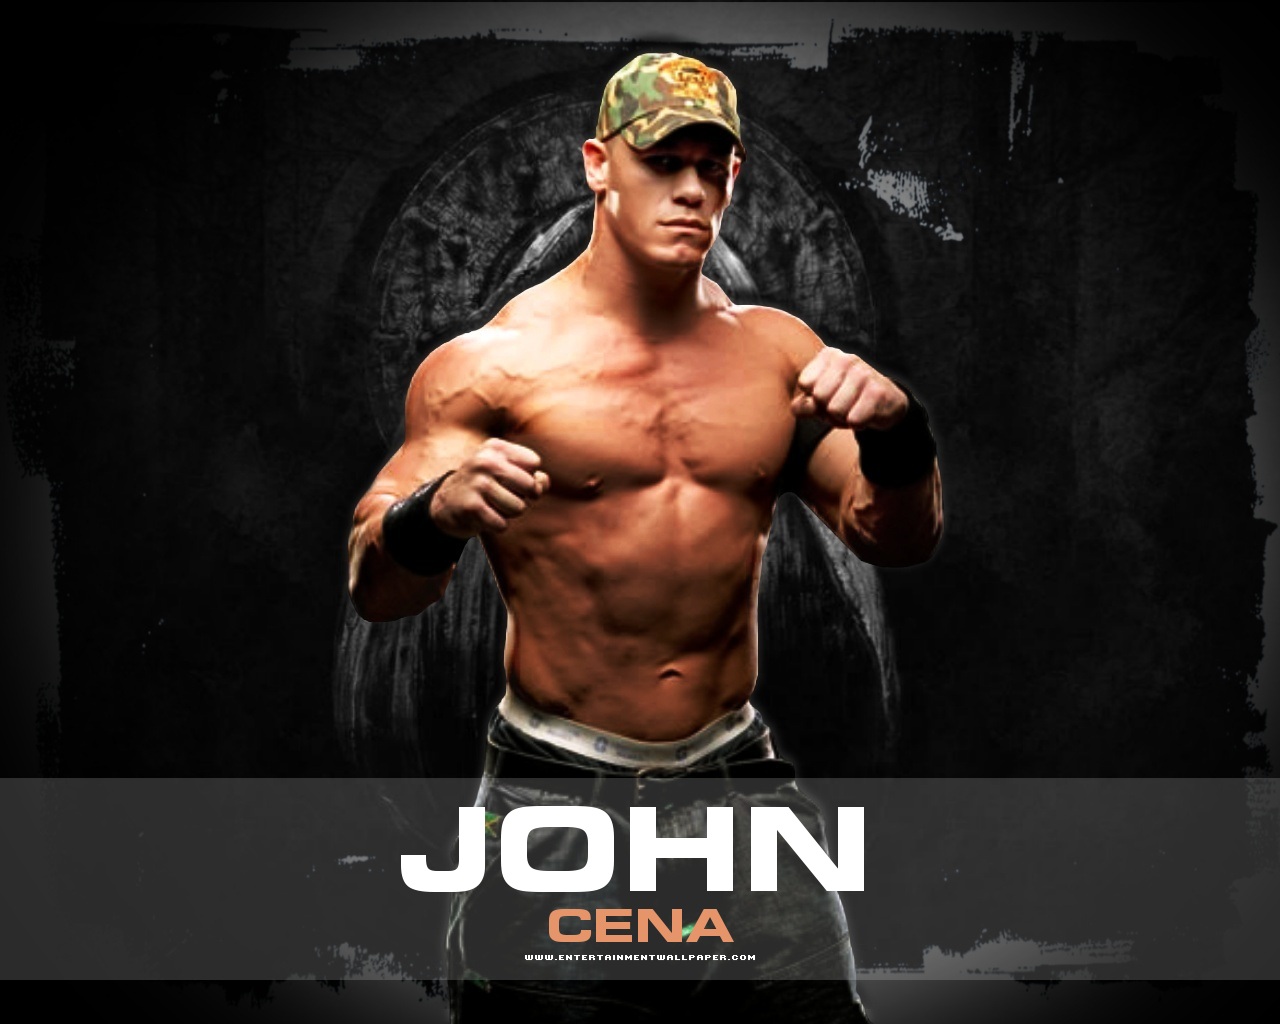 John Cena Wallpaper 2